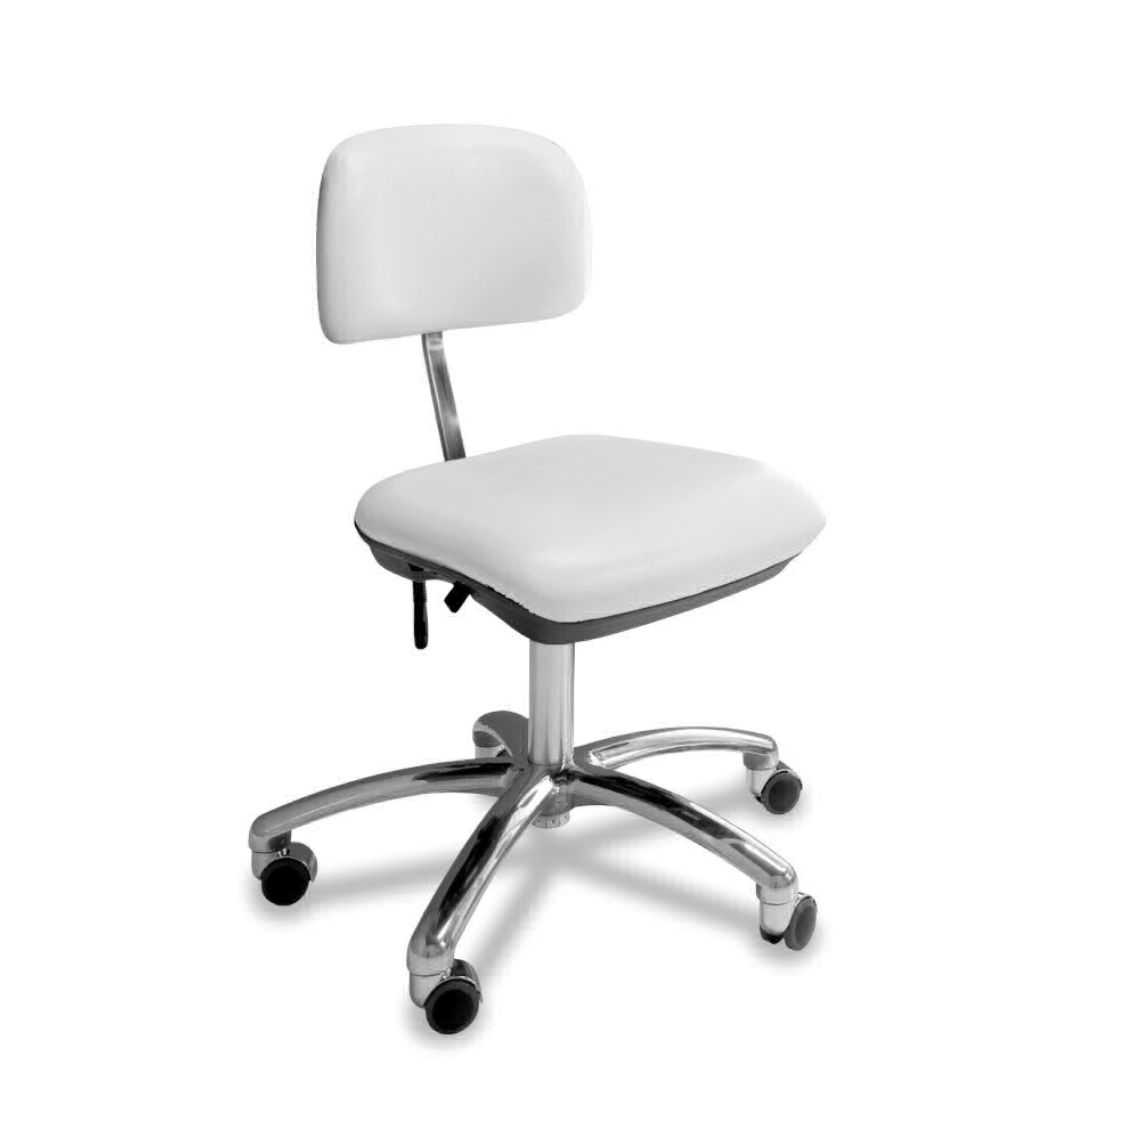 Spavision | Small Chair